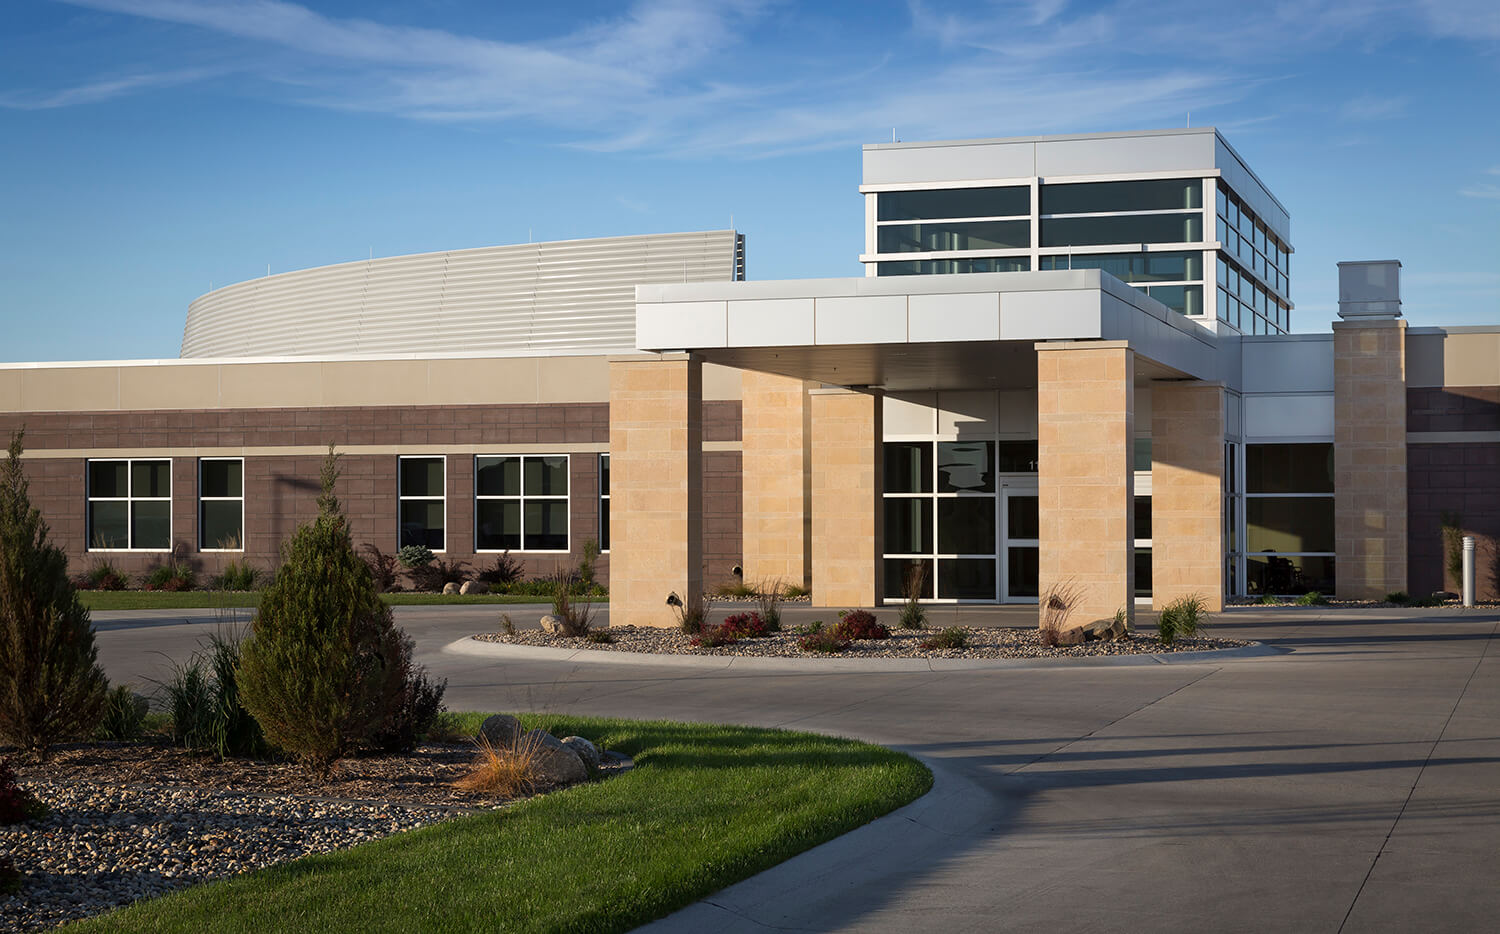 Exterior of Sioux Center Health Facility